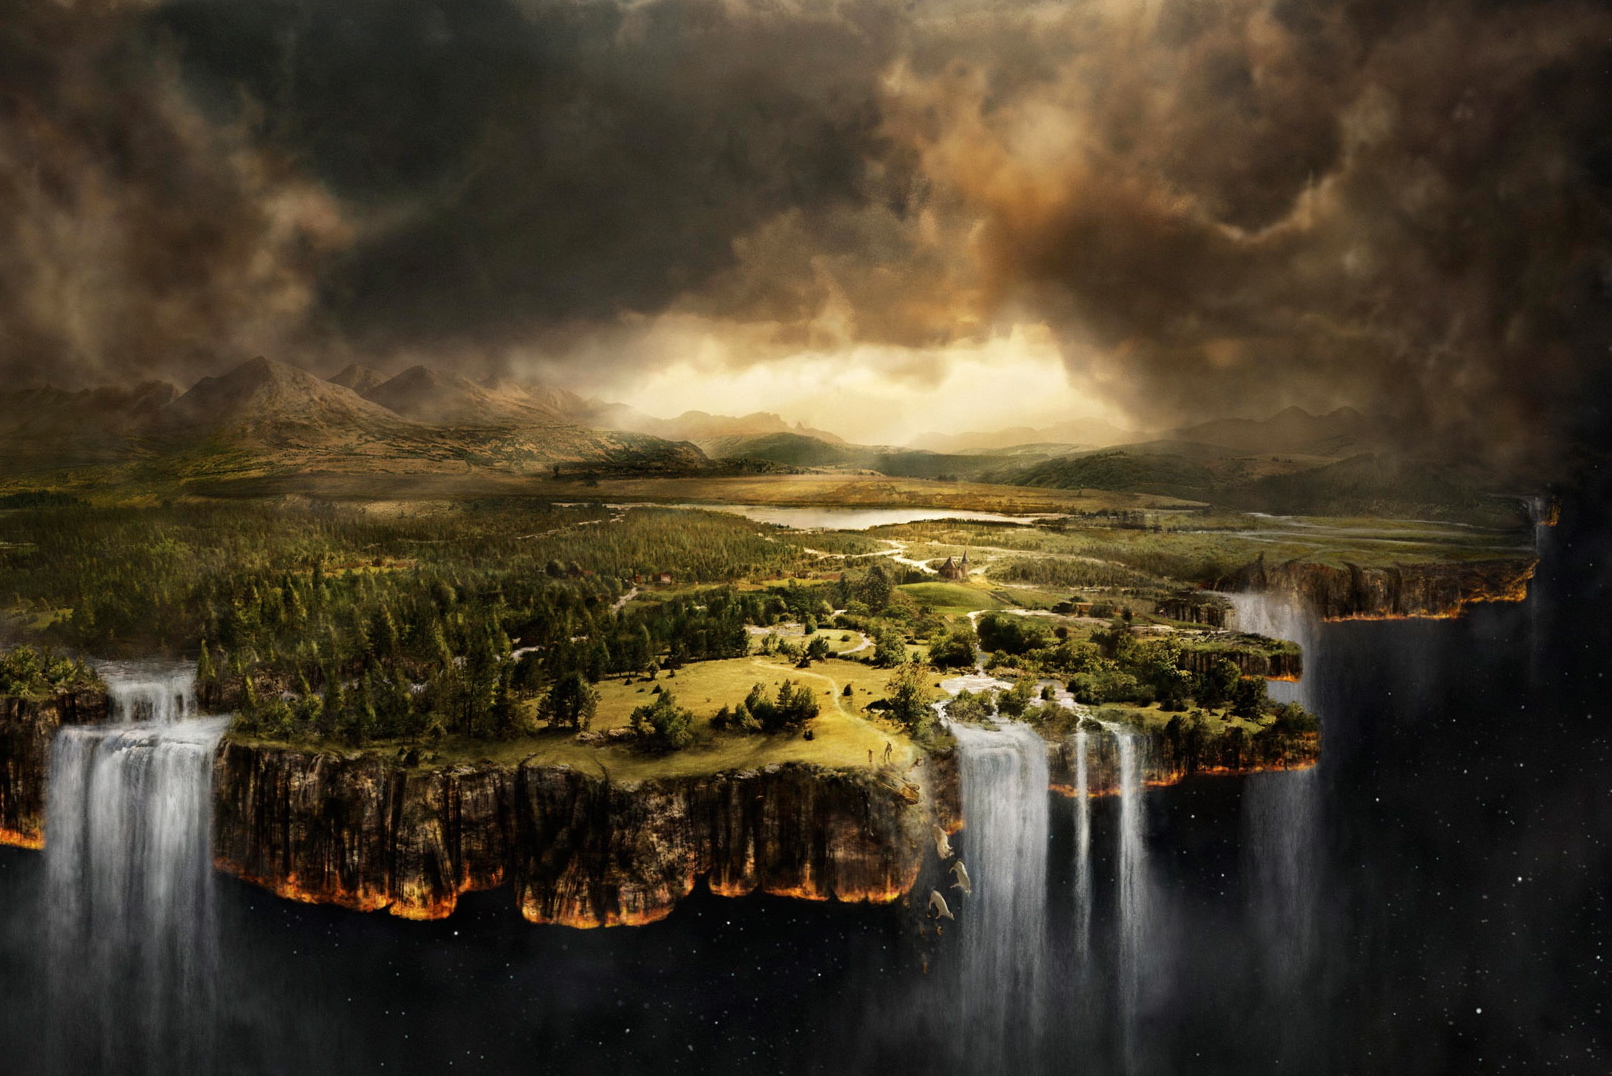 Surreal HD desktop wallpaper: Earth in unusual dreamlike scenery.